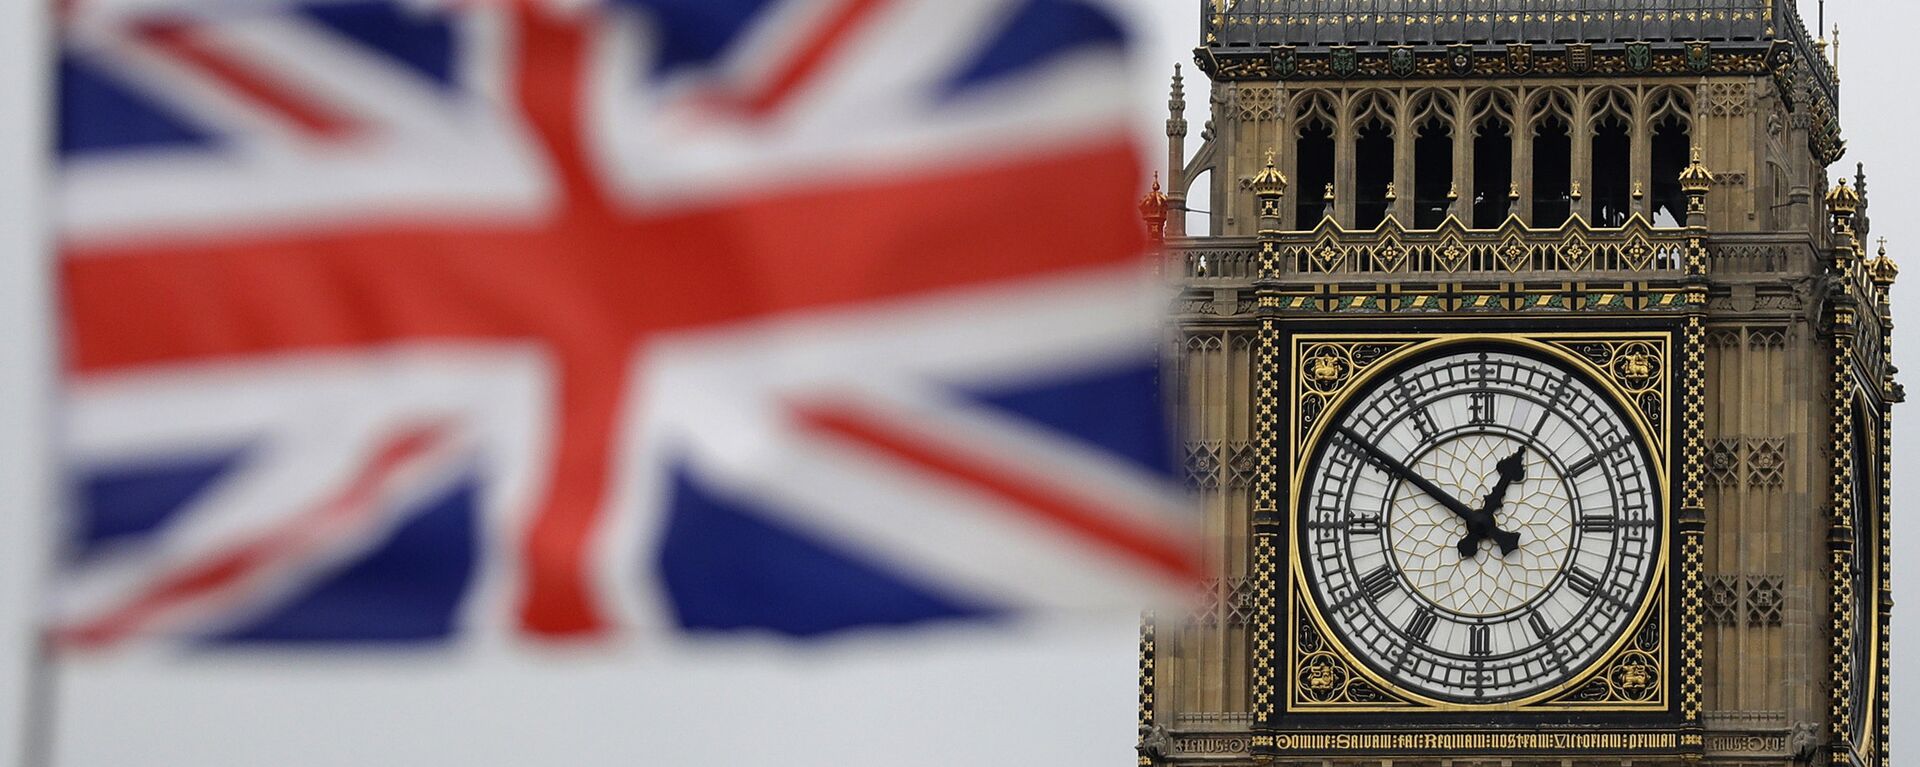 Застава Велике Британије испред Биг Бена у Лондону. - Sputnik Србија, 1920, 03.03.2022